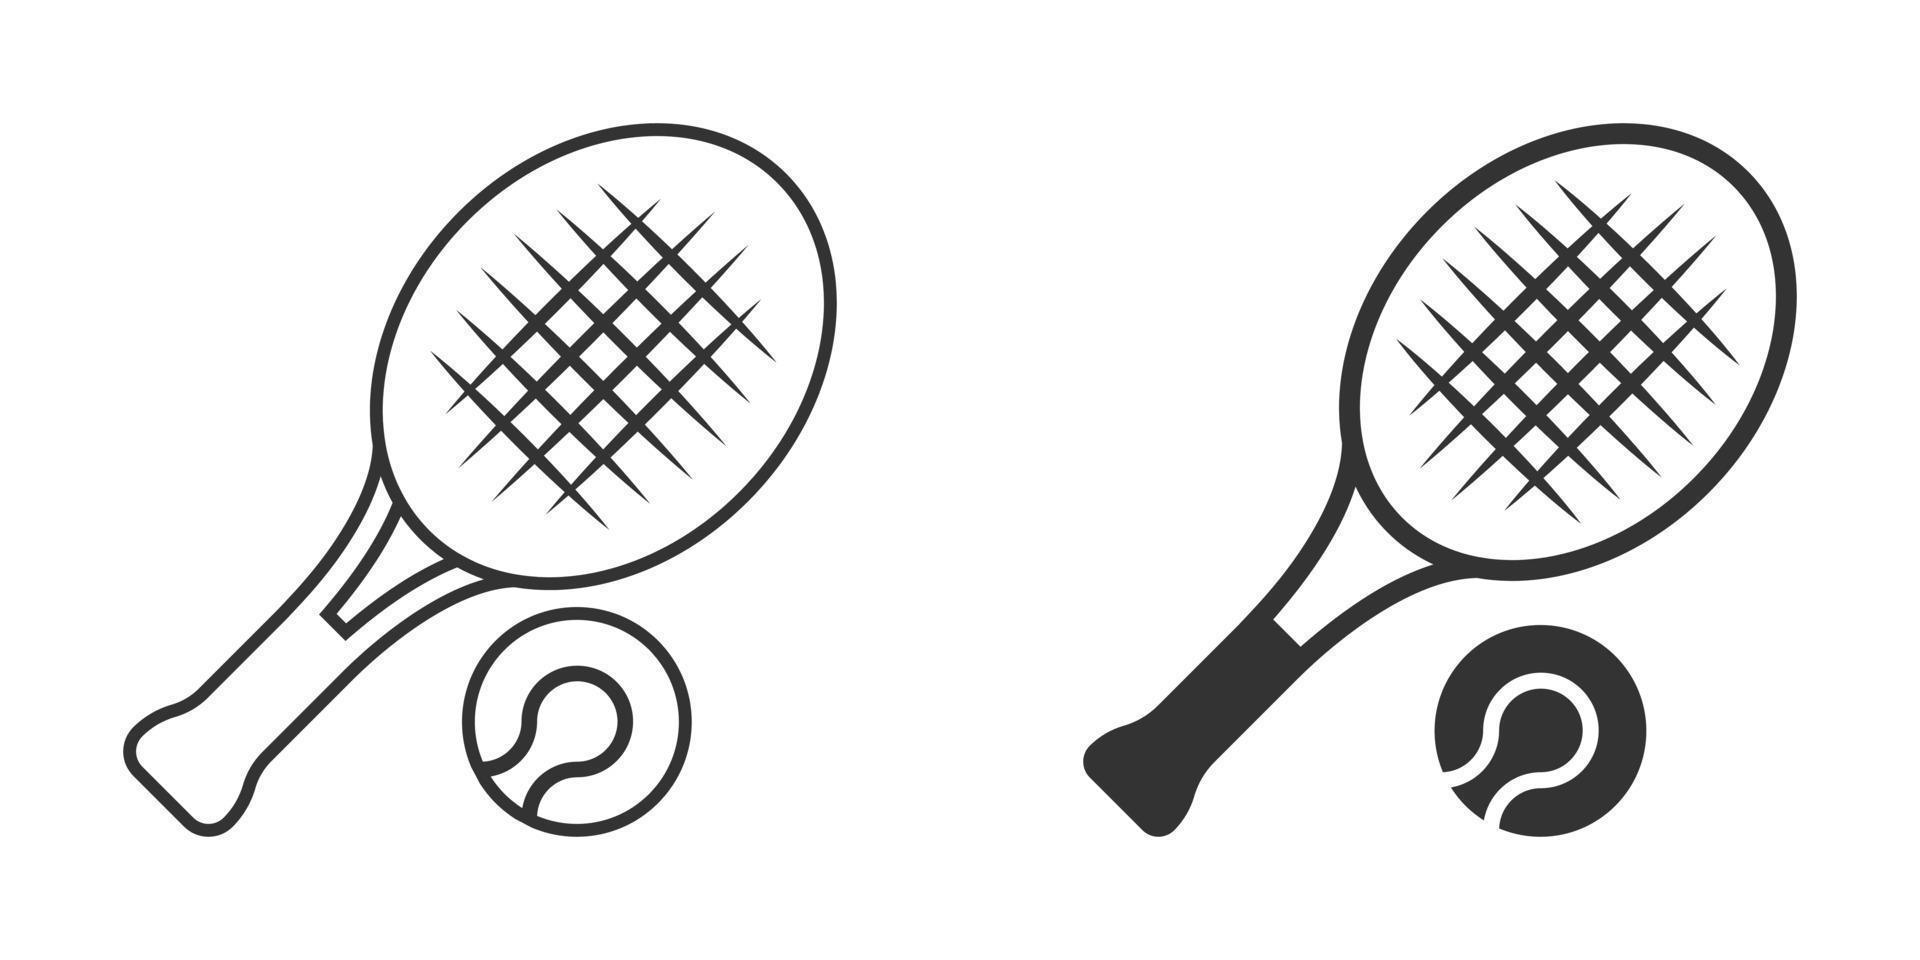 tennis racket icoon in vlak stijl. gaming racket vector illustratie Aan geïsoleerd achtergrond. sport werkzaamheid teken bedrijf concept.